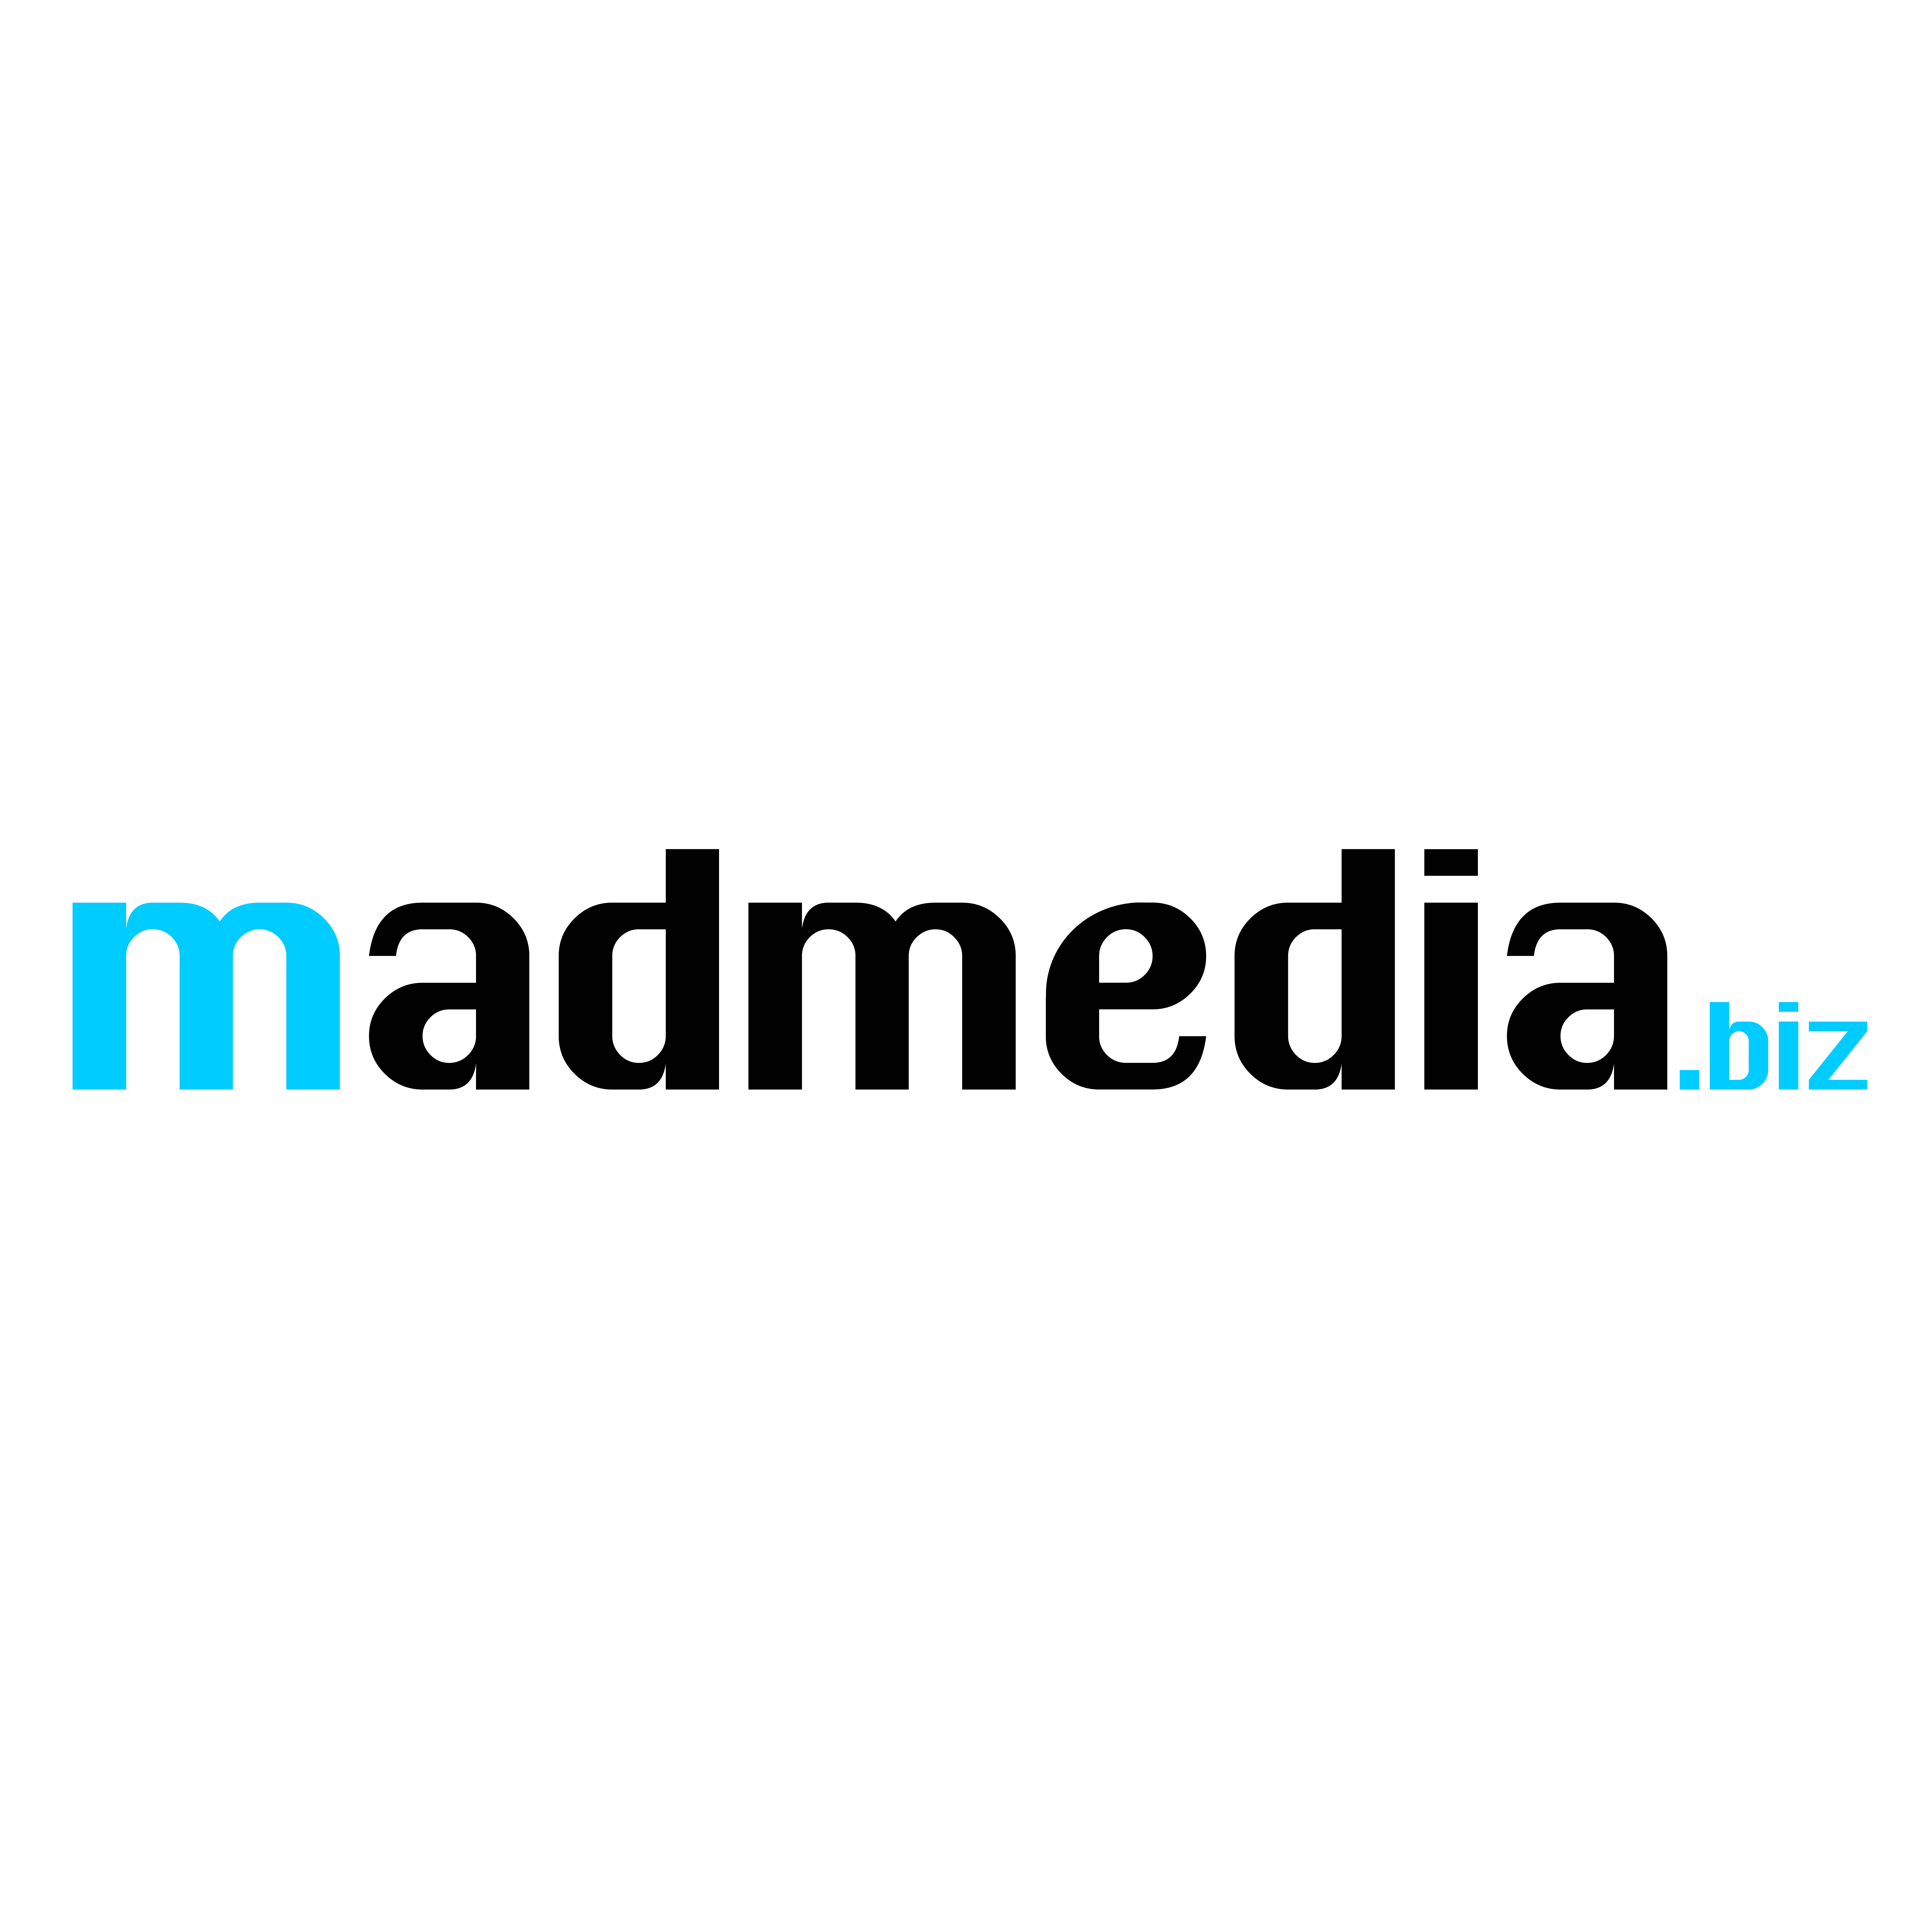 madmedia.biz Logo